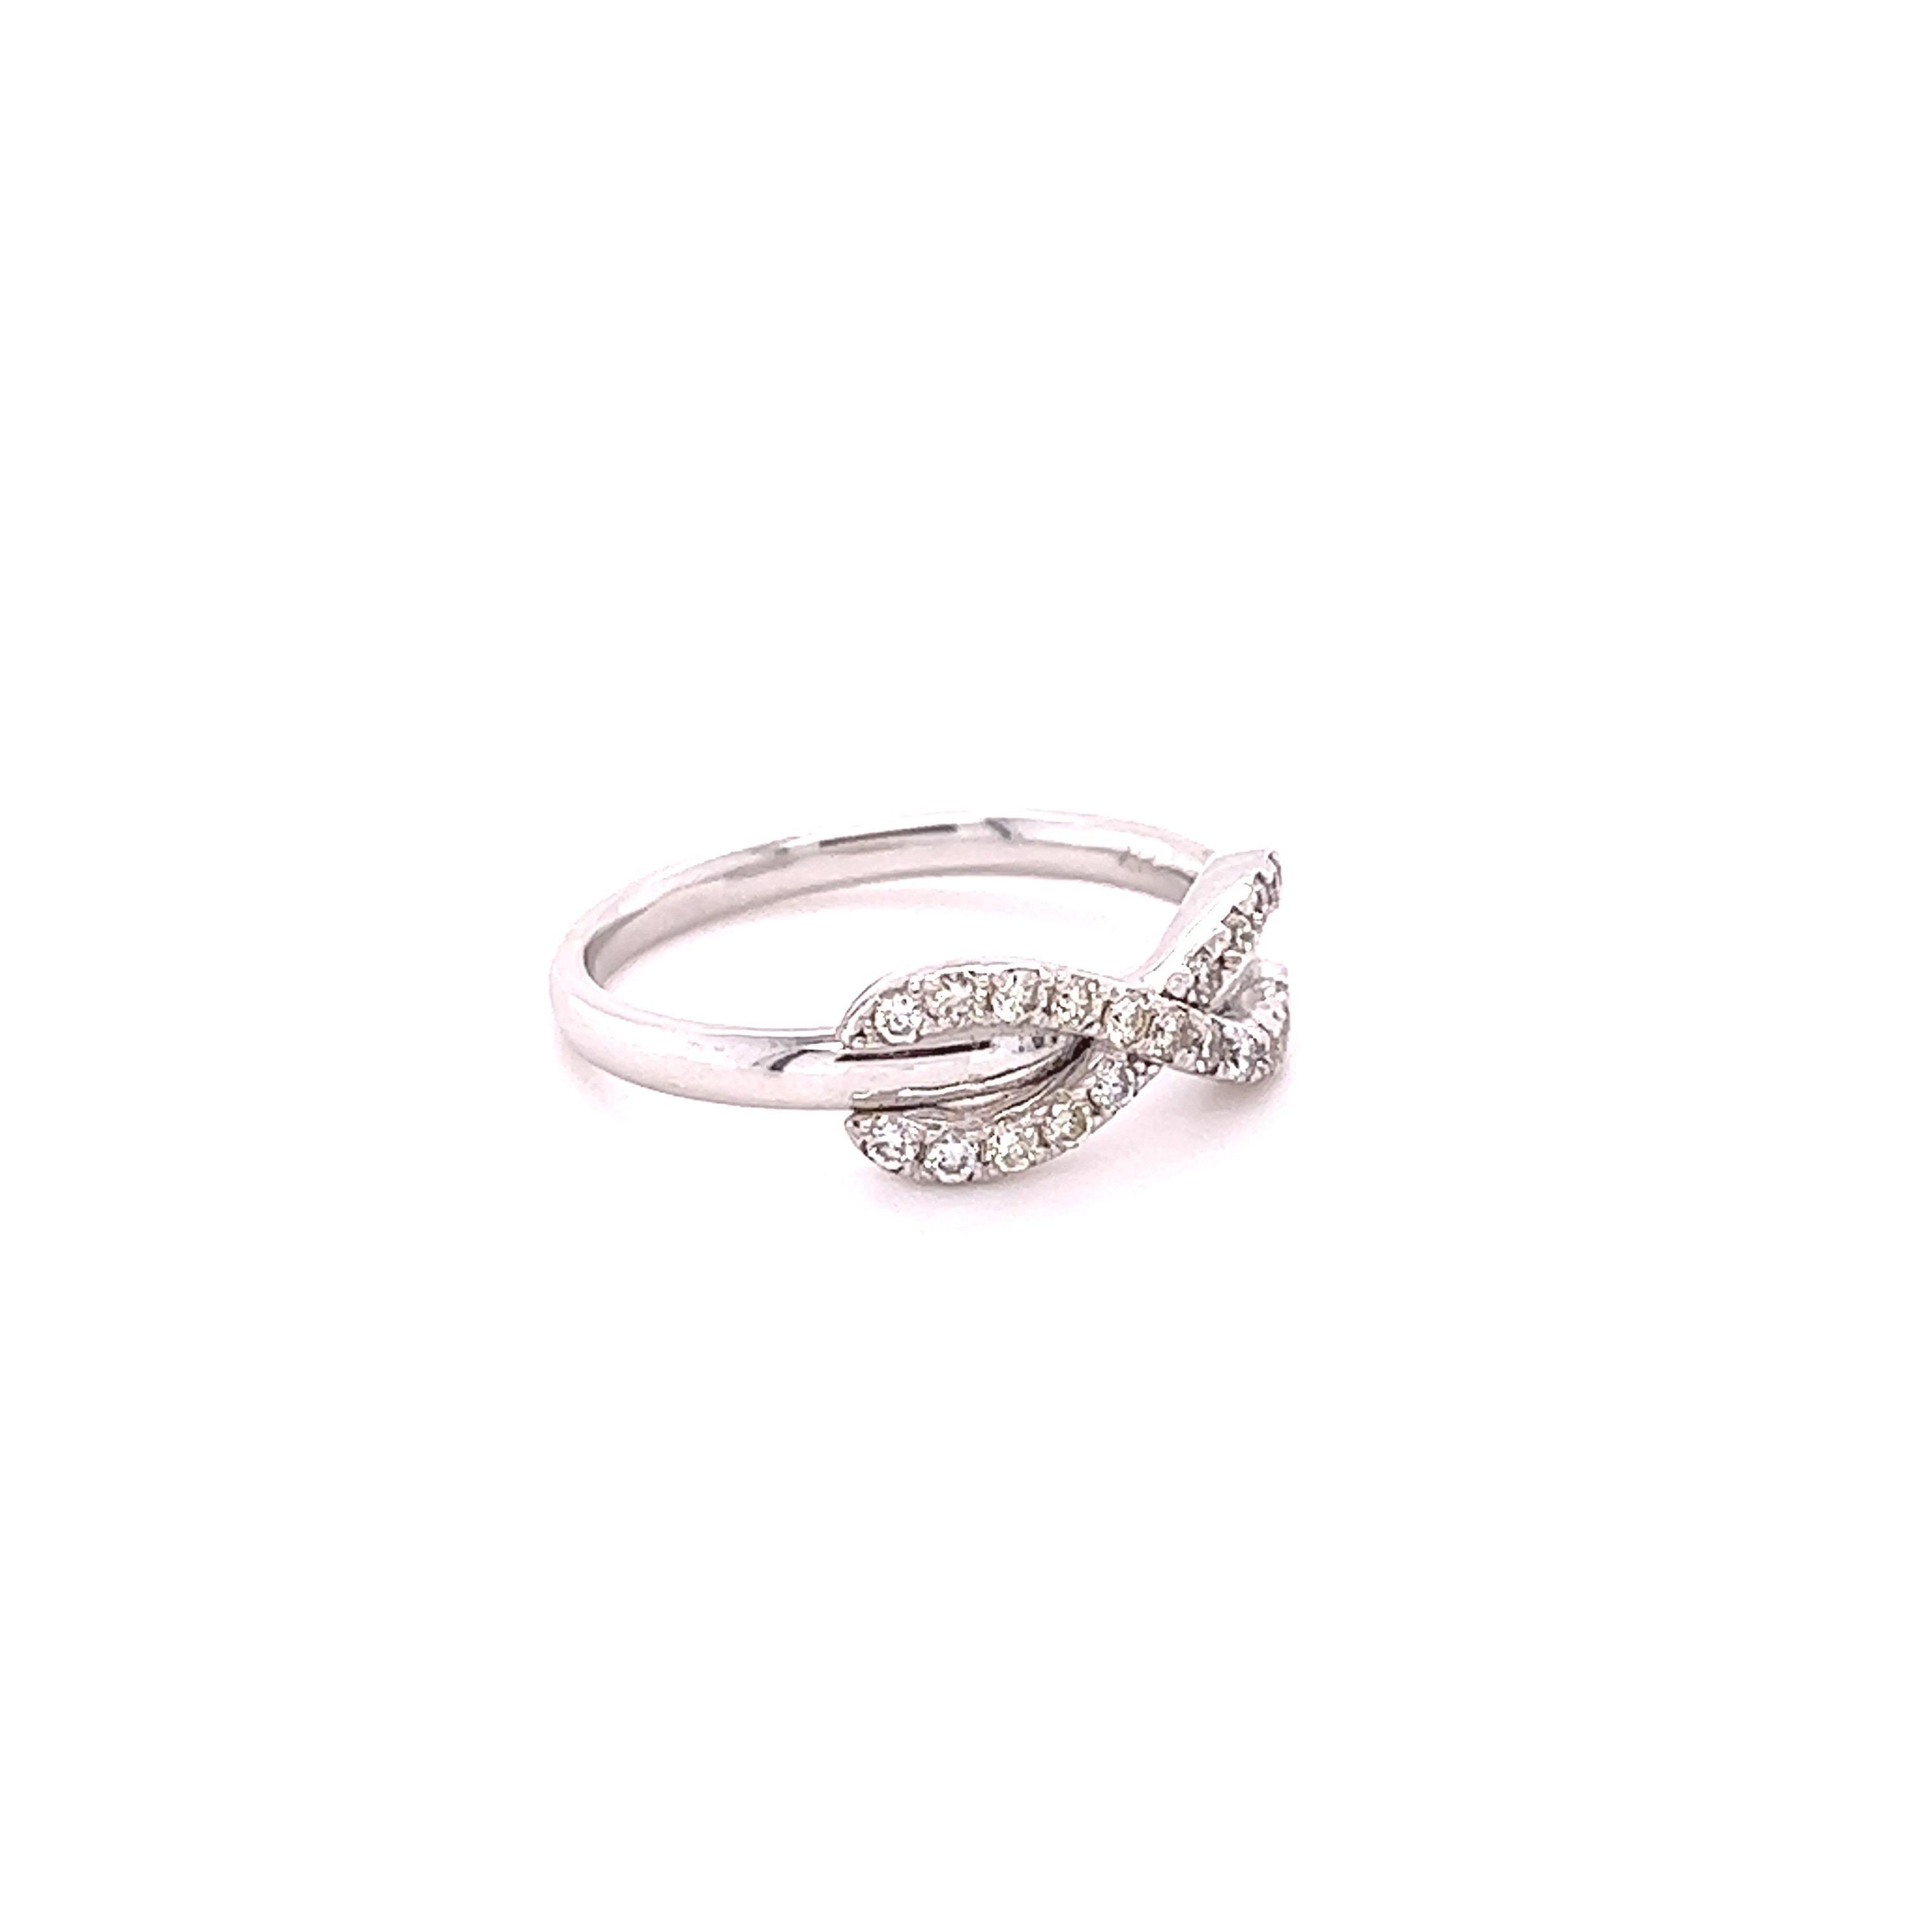 Dieser Ring hat 21 natürliche Diamanten im Rundschliff mit einem Gewicht von 0,29 Karat. Die Reinheit und Farbe der Diamanten sind SI1-H. 
Der Ring ist in 14 Karat Weißgold mit einem Gewicht von ca. 2,9 Gramm gefasst. 

Es handelt sich um einen Ring